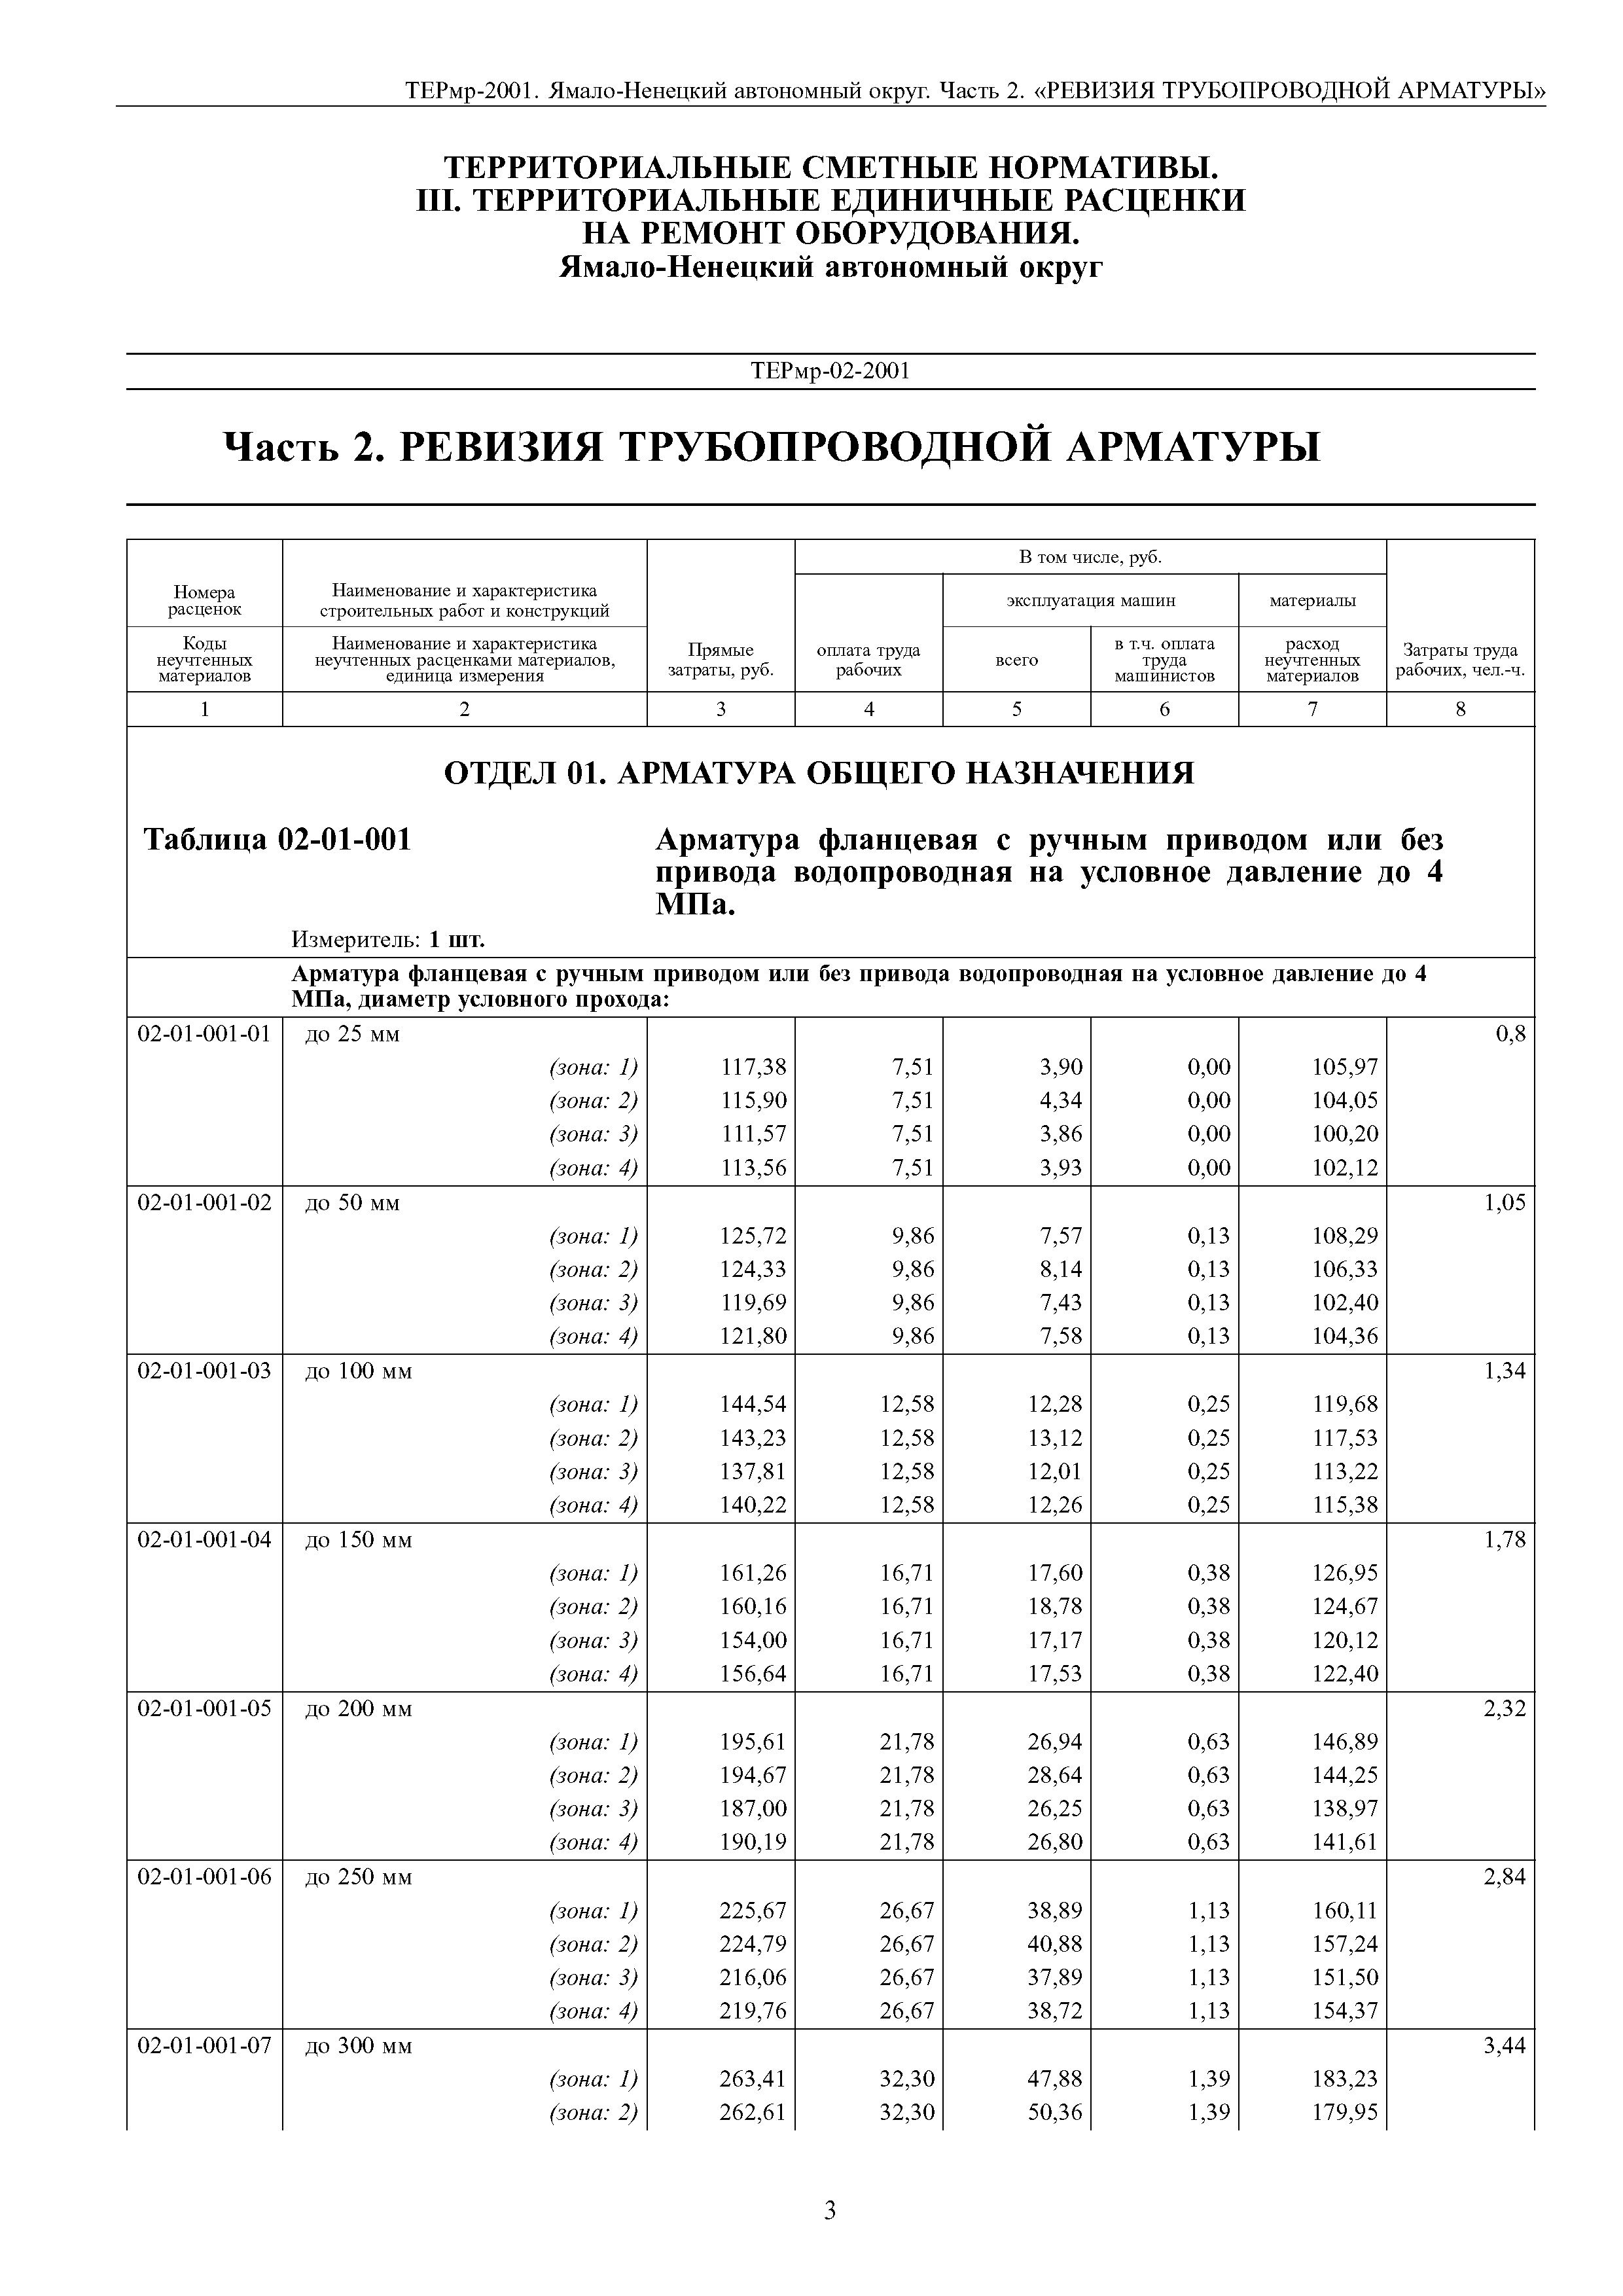 ТЕРмр Ямало-Ненецкий автономный округ 02-2001